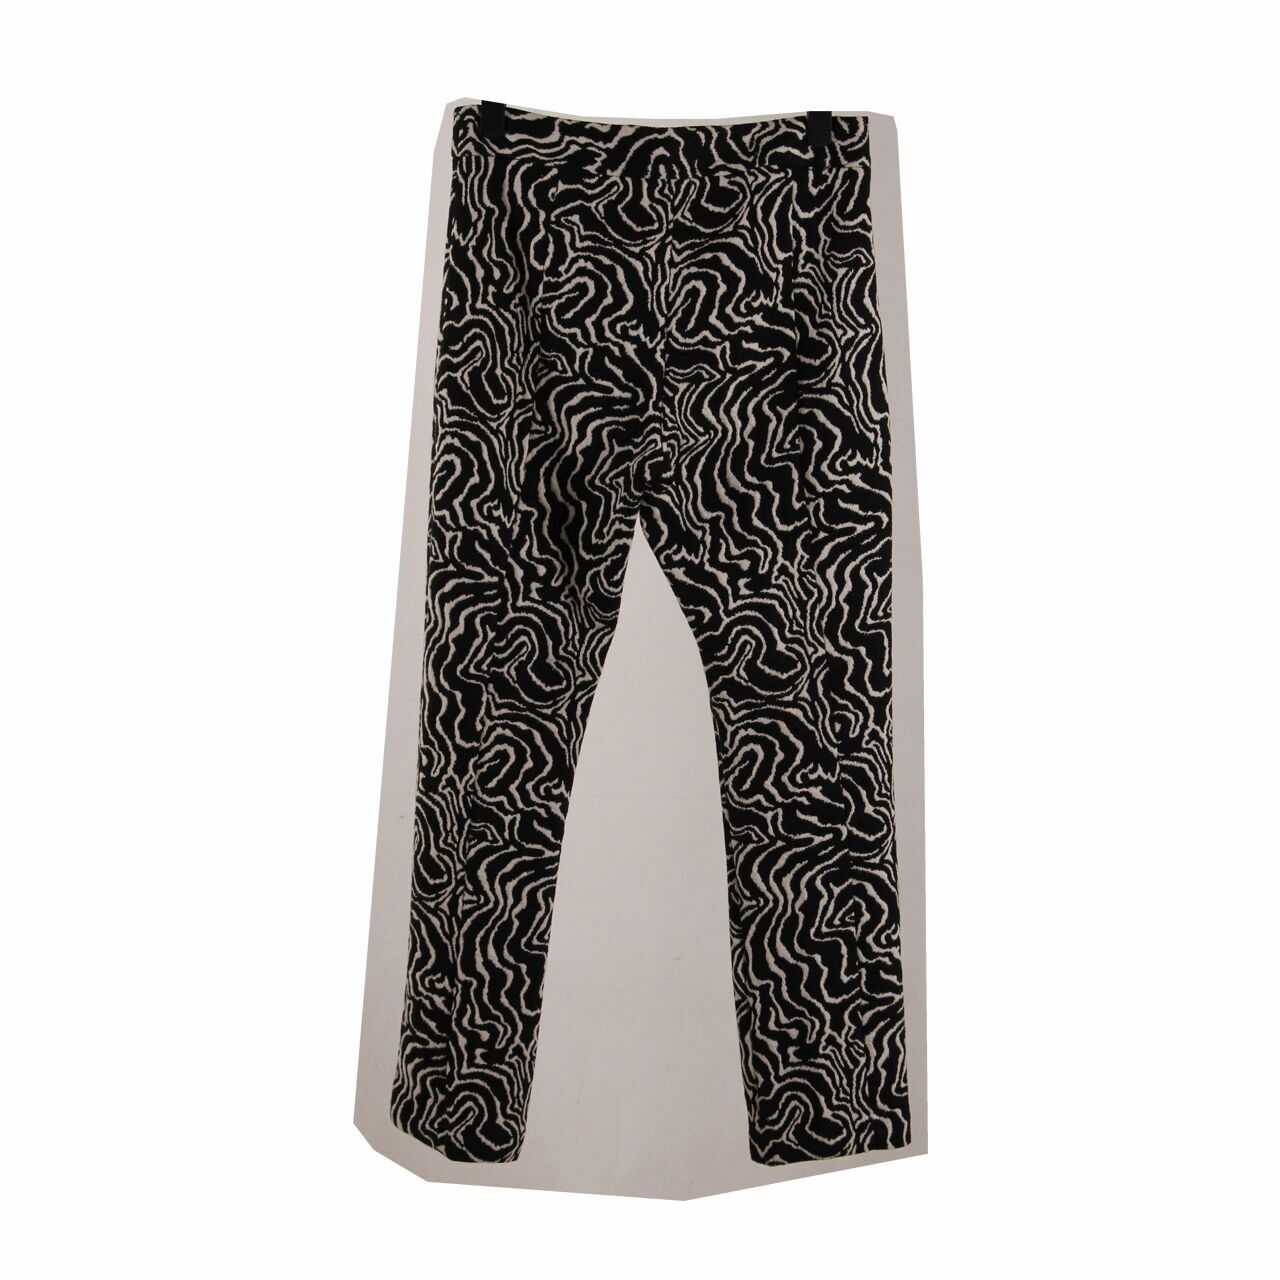 Zara Black & White Long Pants